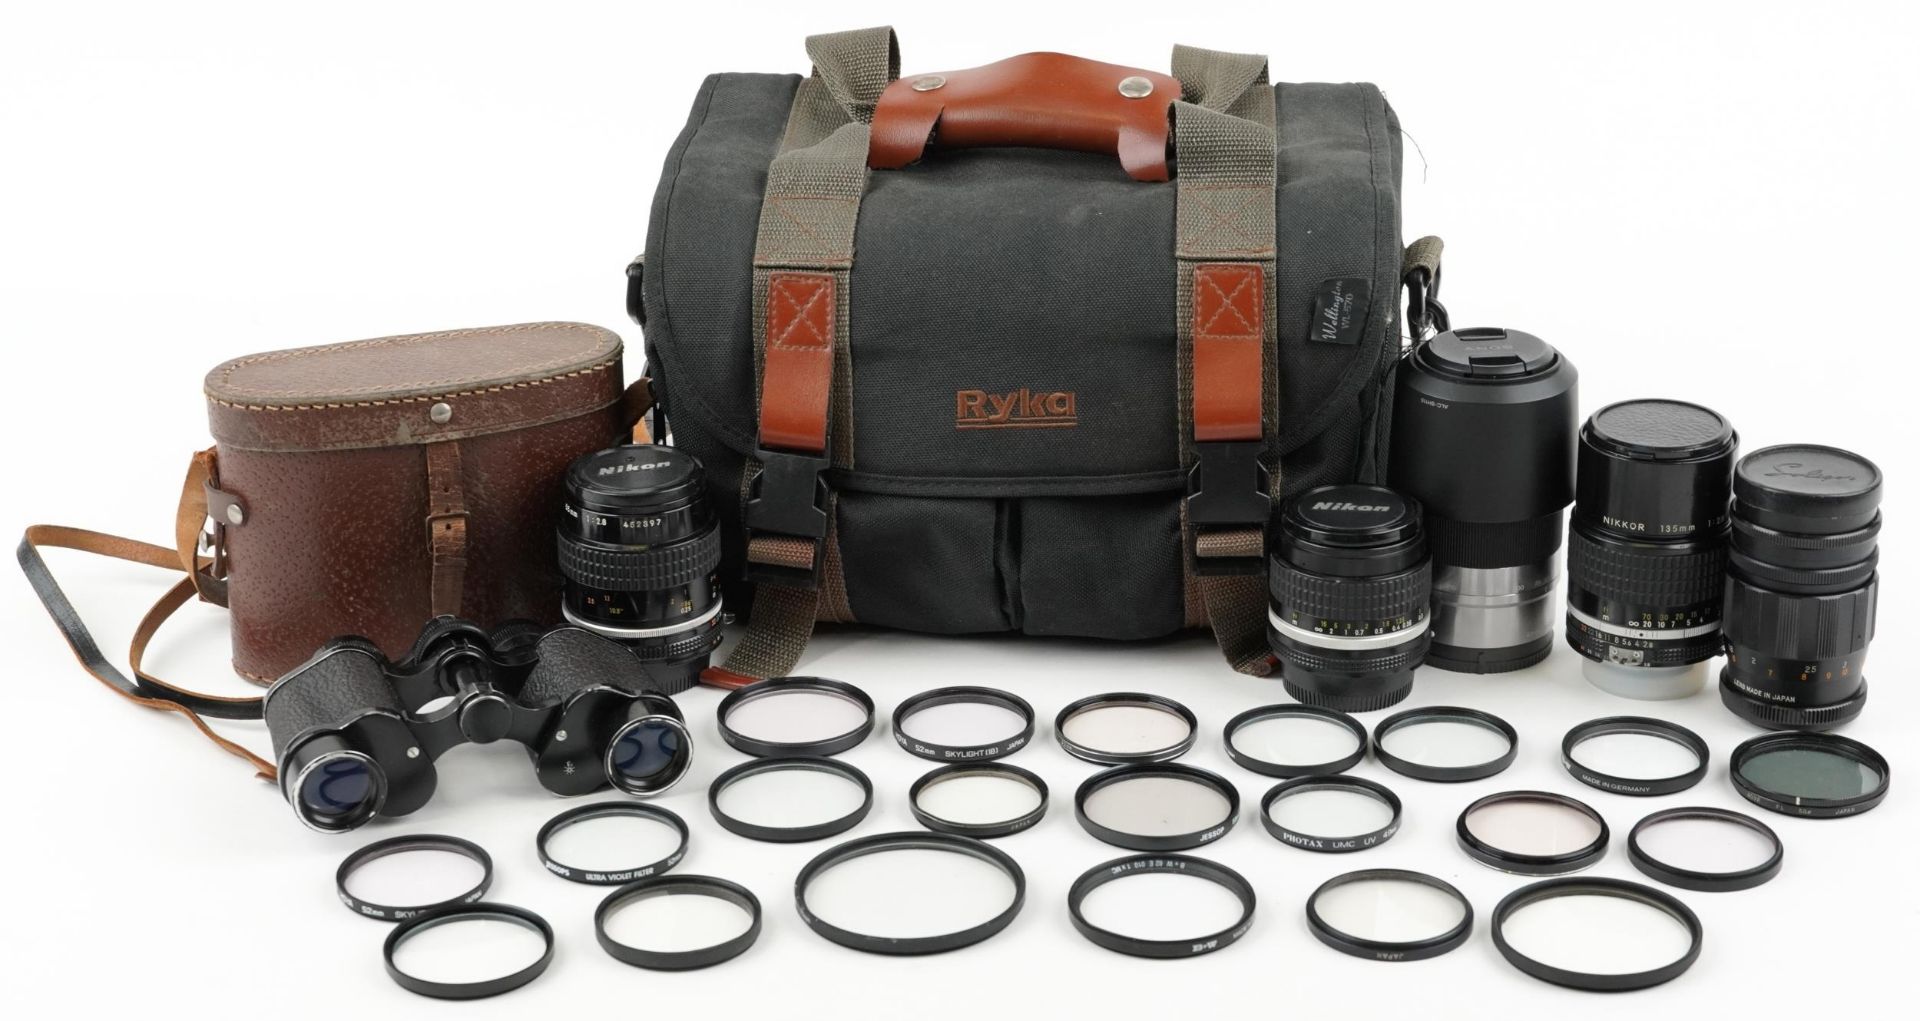 Camera lenses including Nikon 55mm F/2.8AIS, Nikon 28mm F/2.8AIS, Nikon 135mm F/2.8AIS and Sony 55-